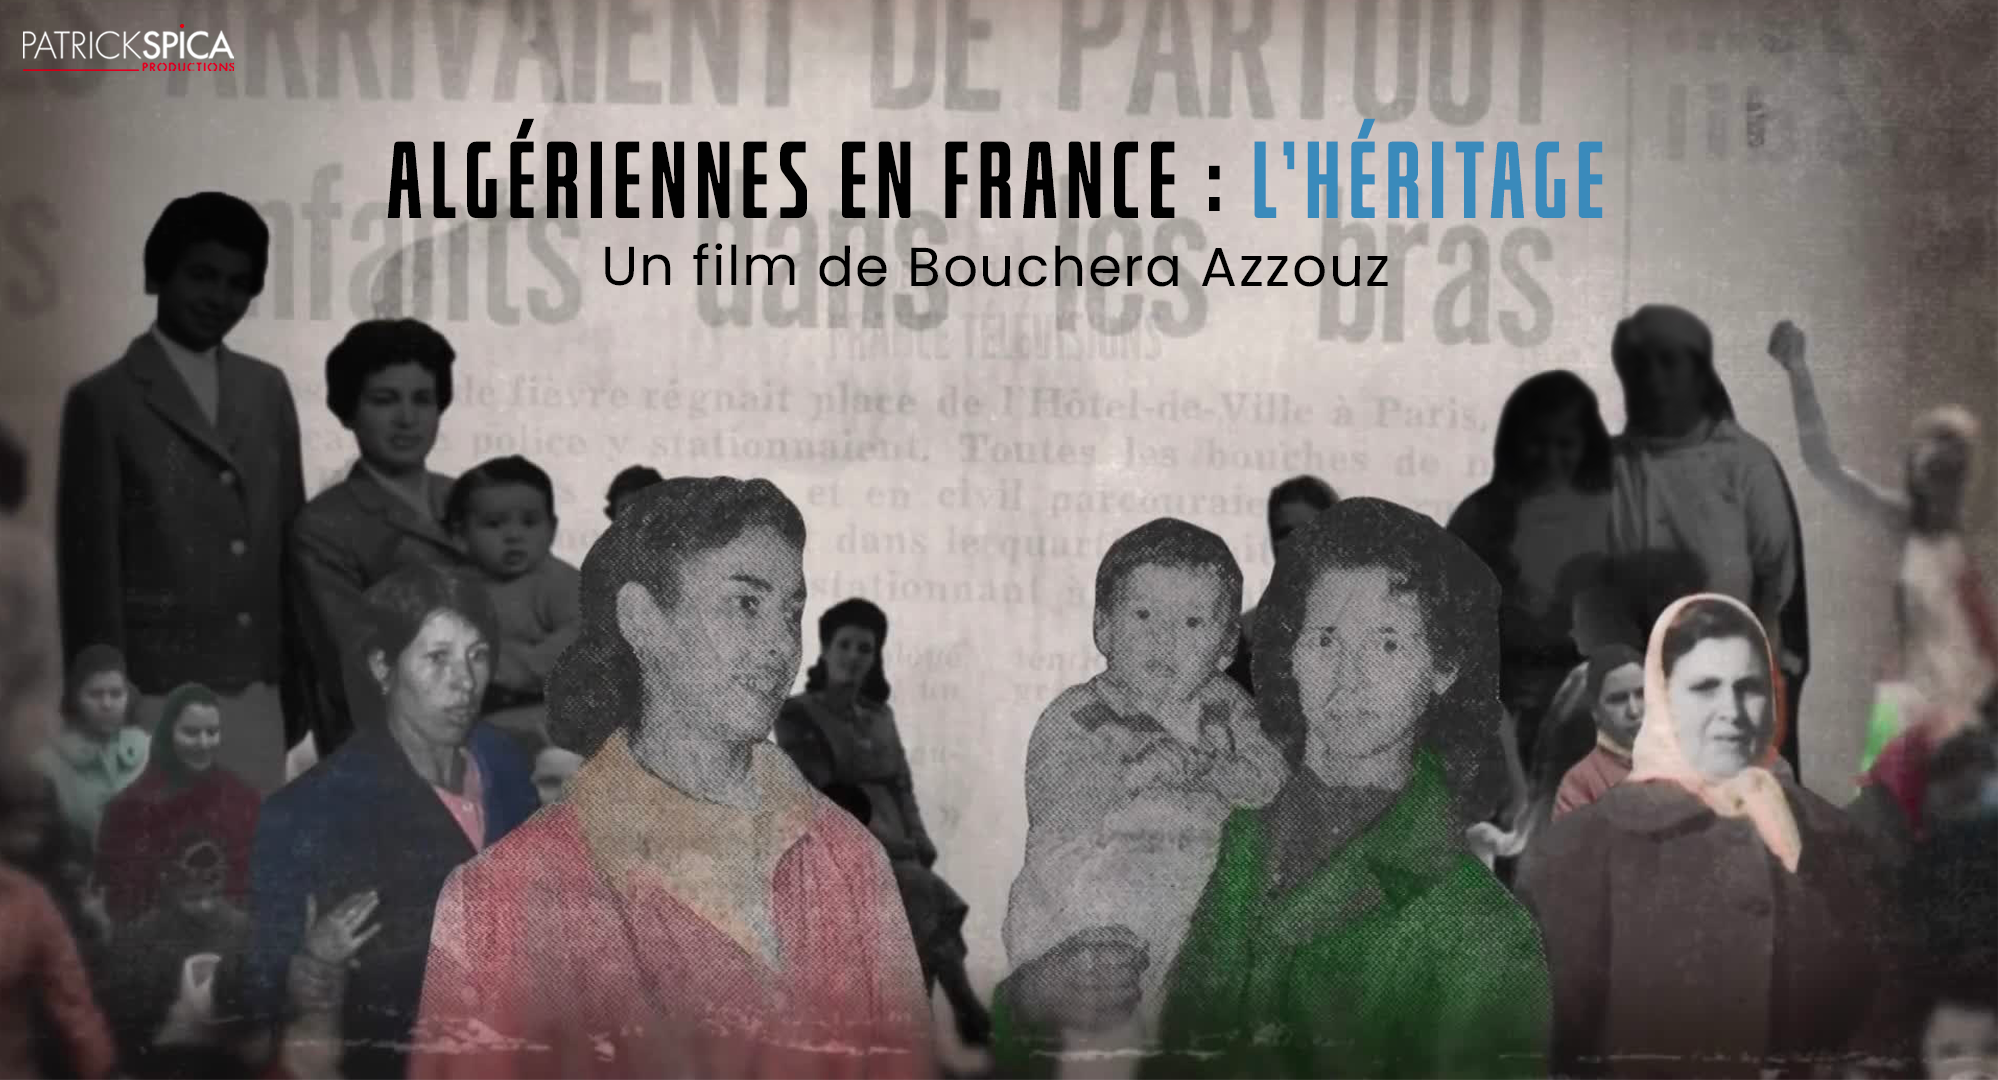 نساء جزائريات في فرنسا: الميراث